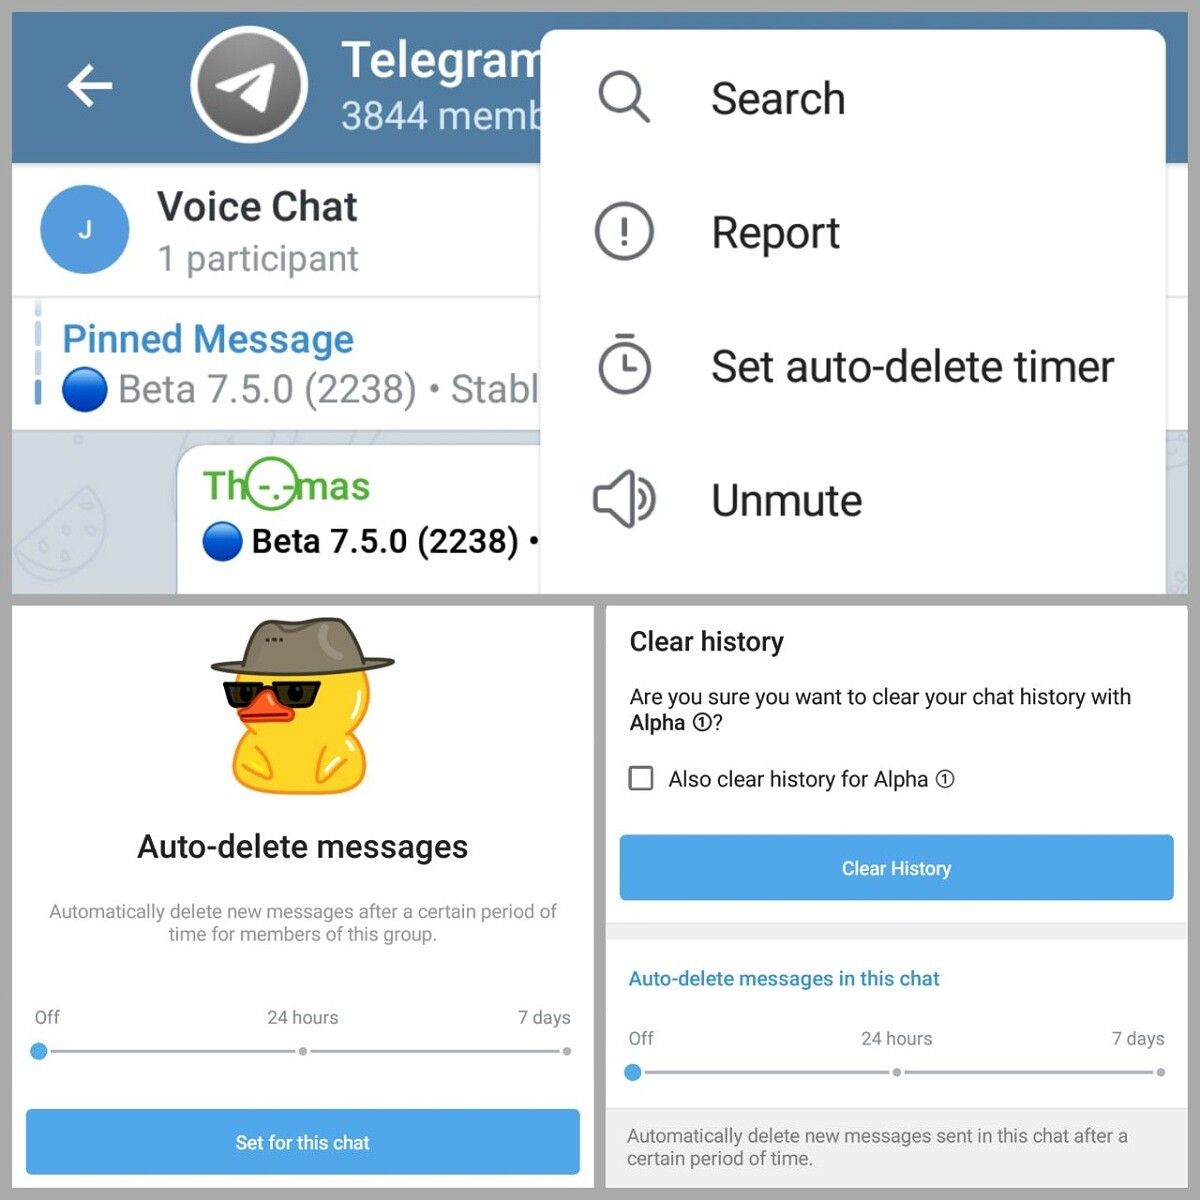 Telegram Auto-delete timer for admins